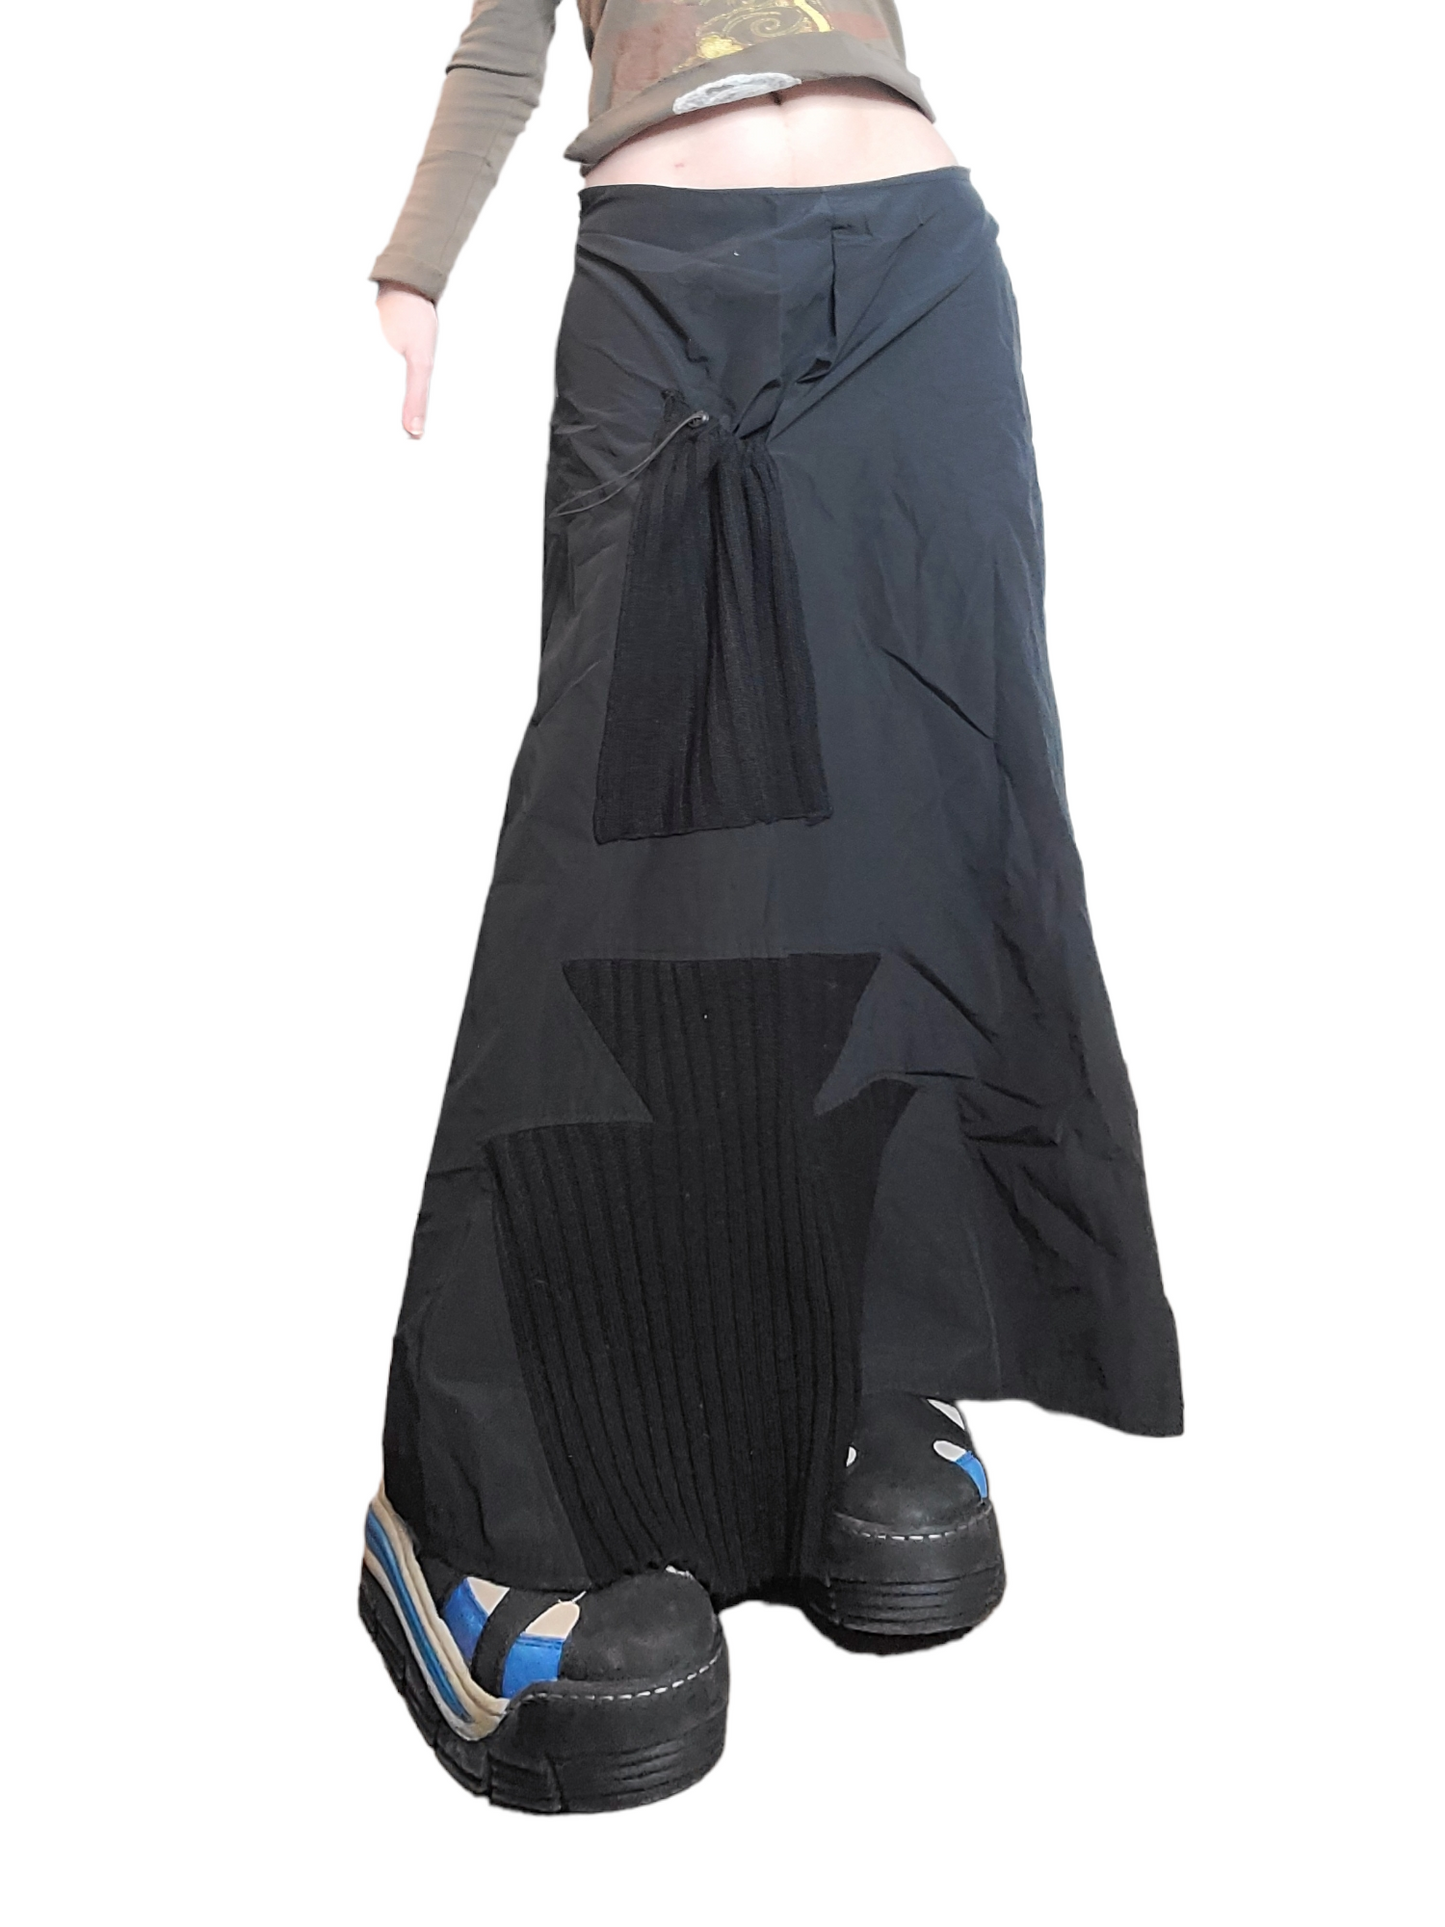 Maxi skirt parachute gorpcore subversive basics